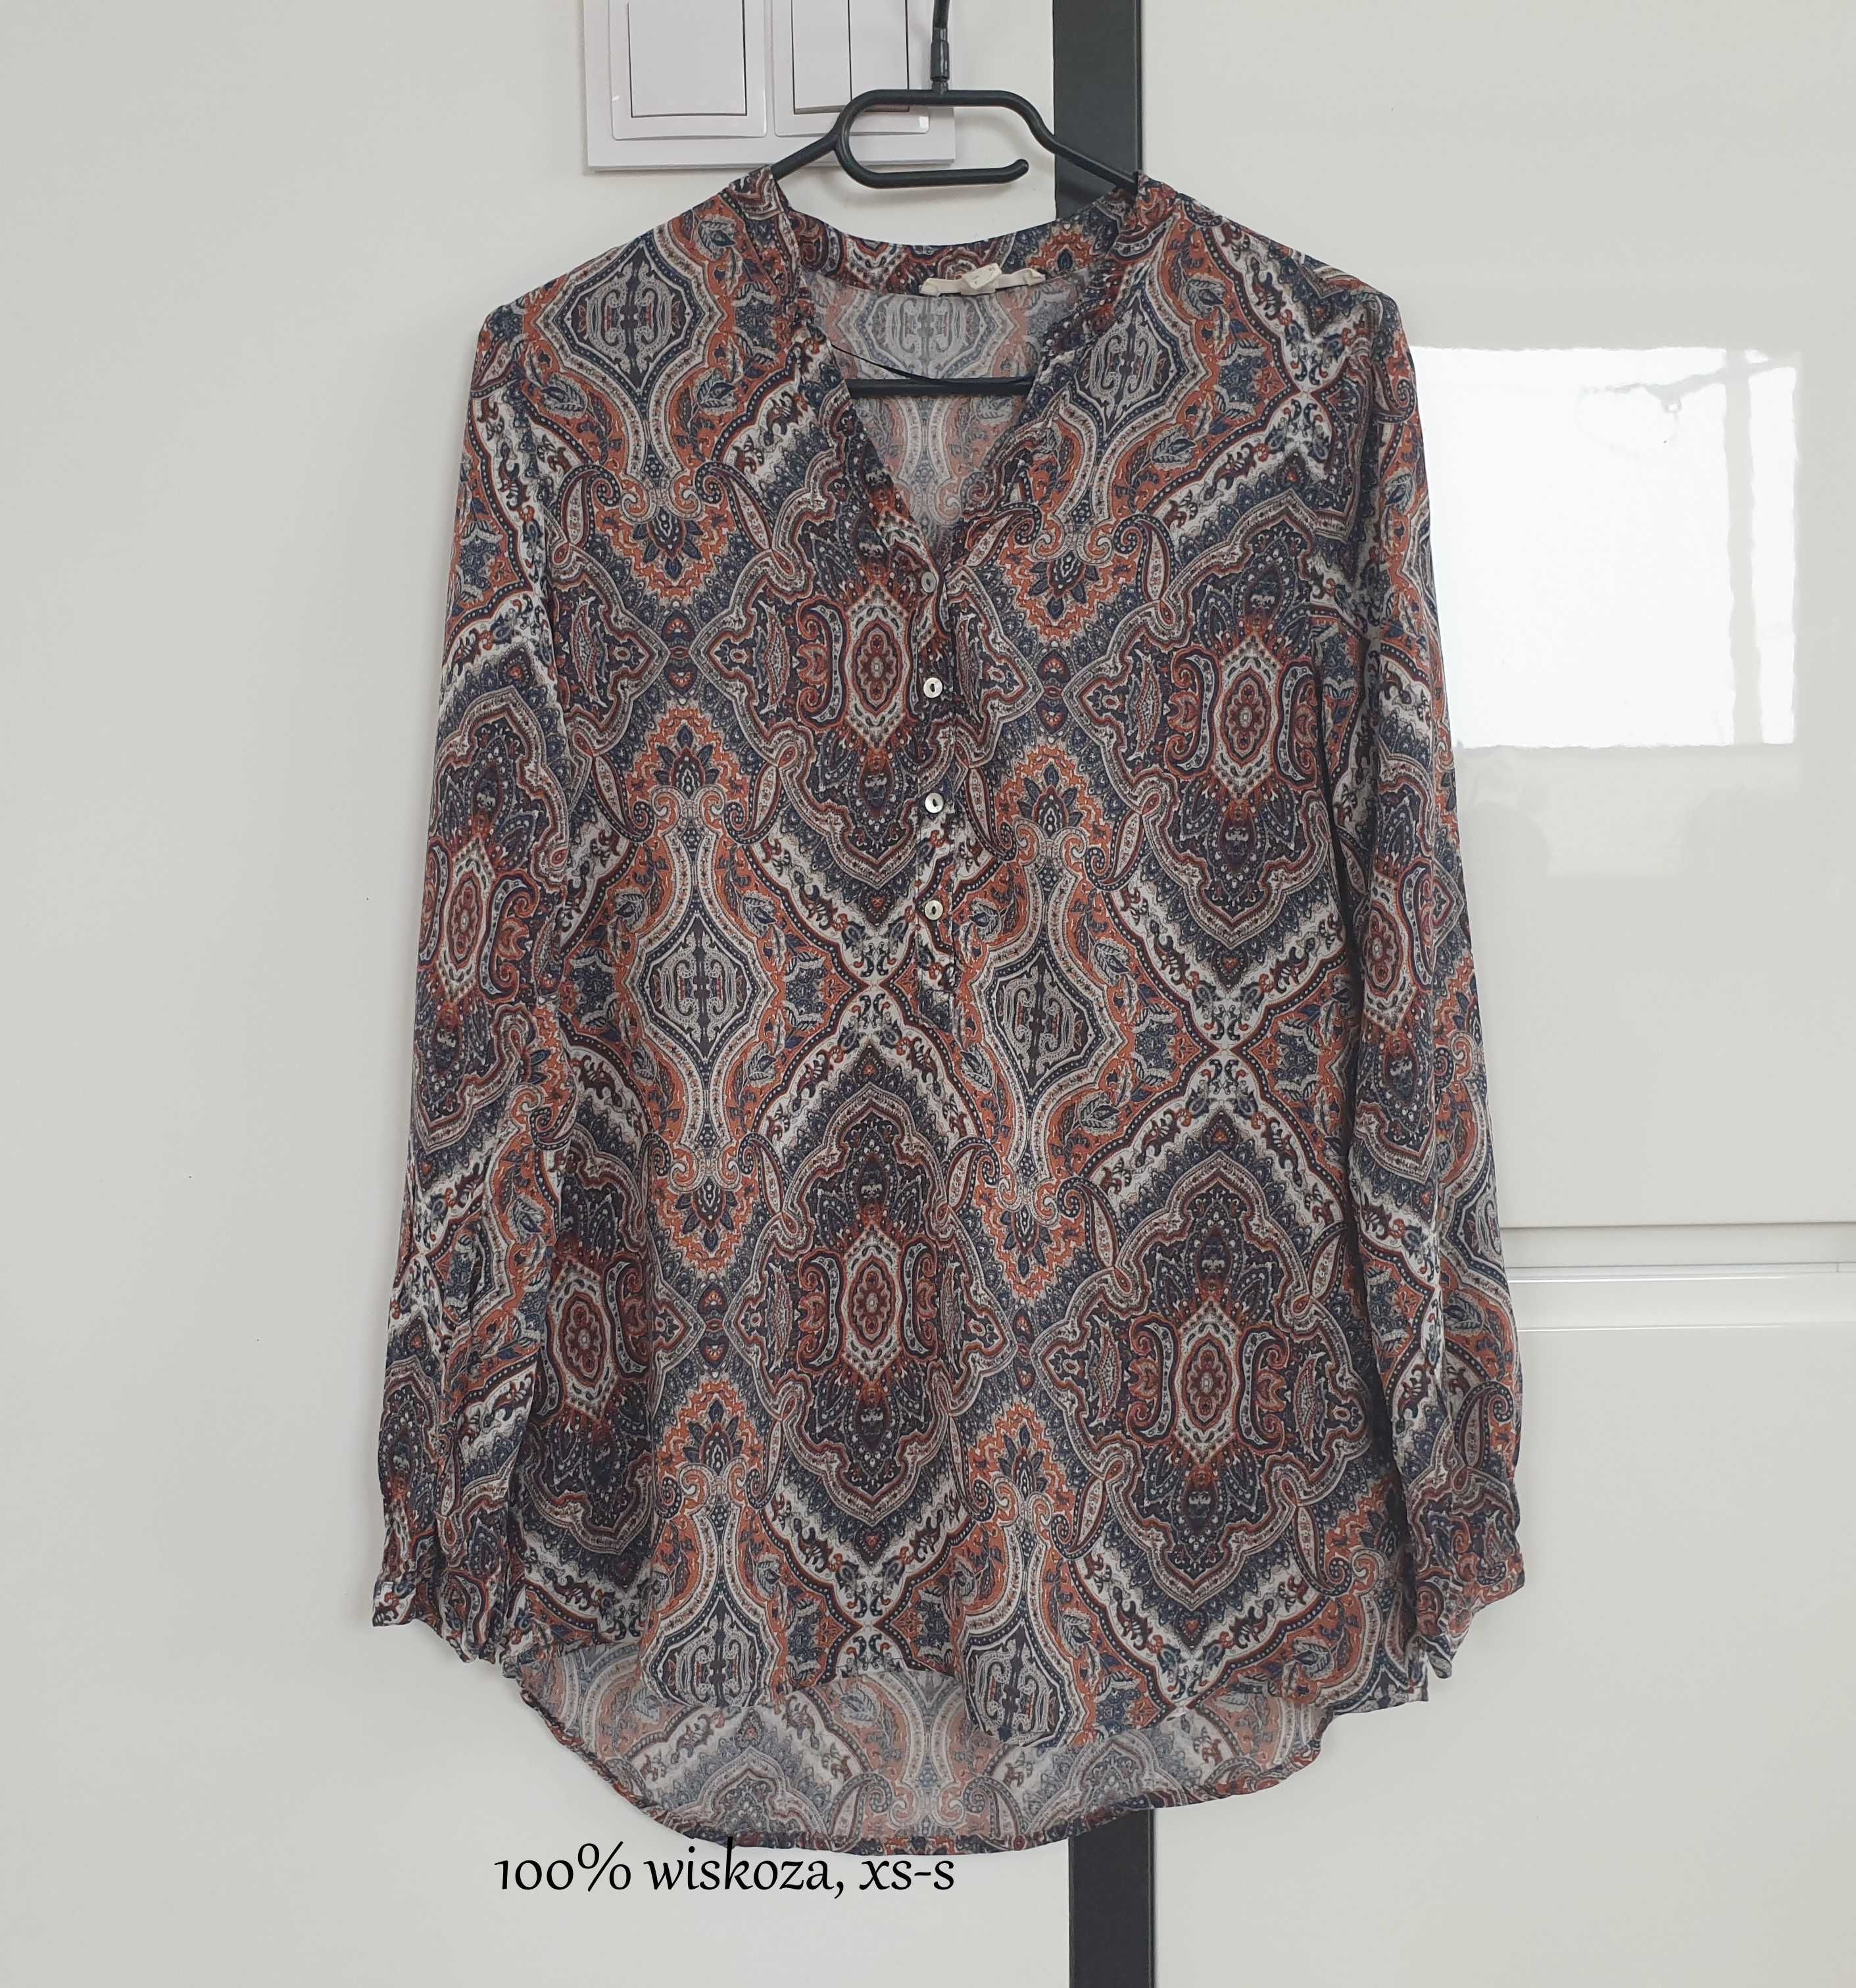 Bluzka/tunika w kolorowy super modny print, 100% wiskoza, Esprit, xs-s